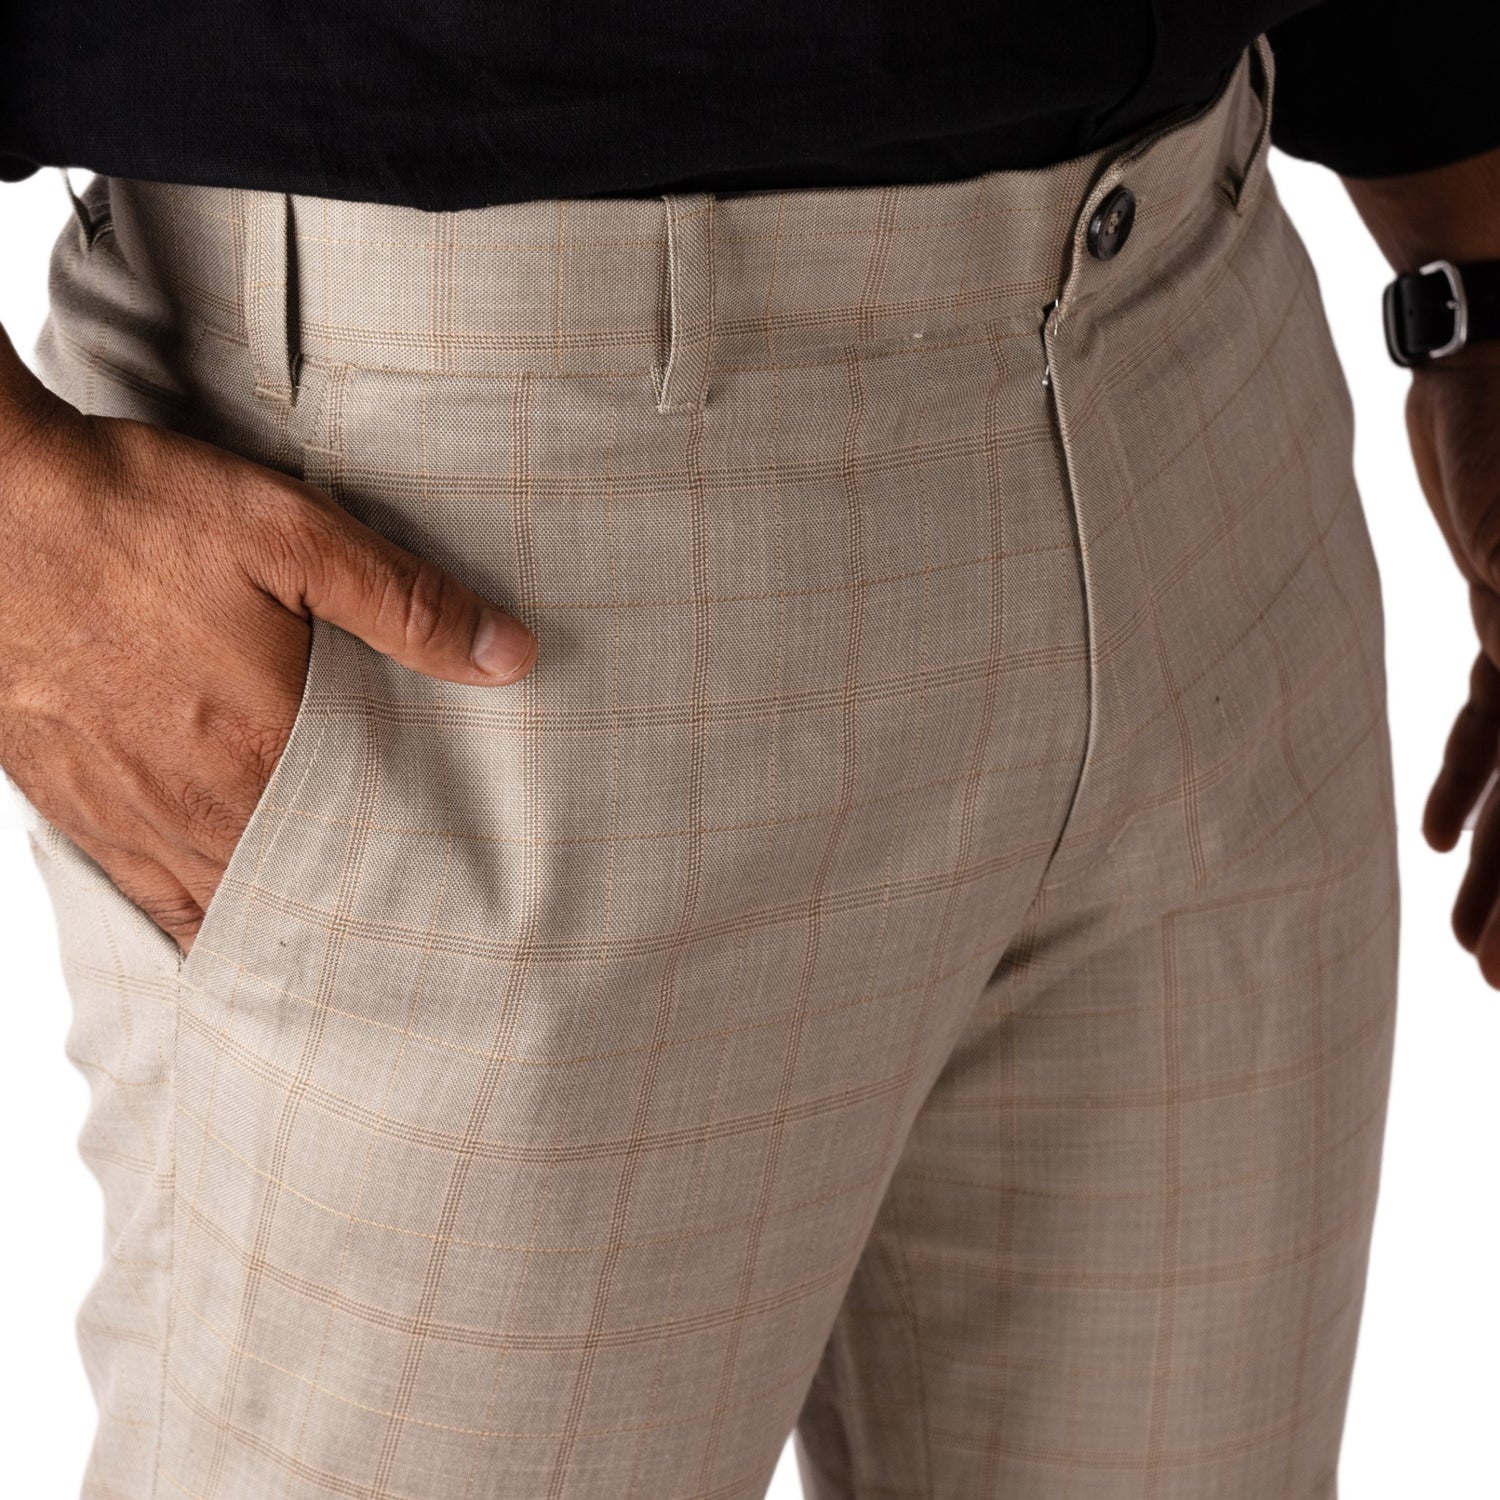 Tan color check blend cotton trousers pant for men